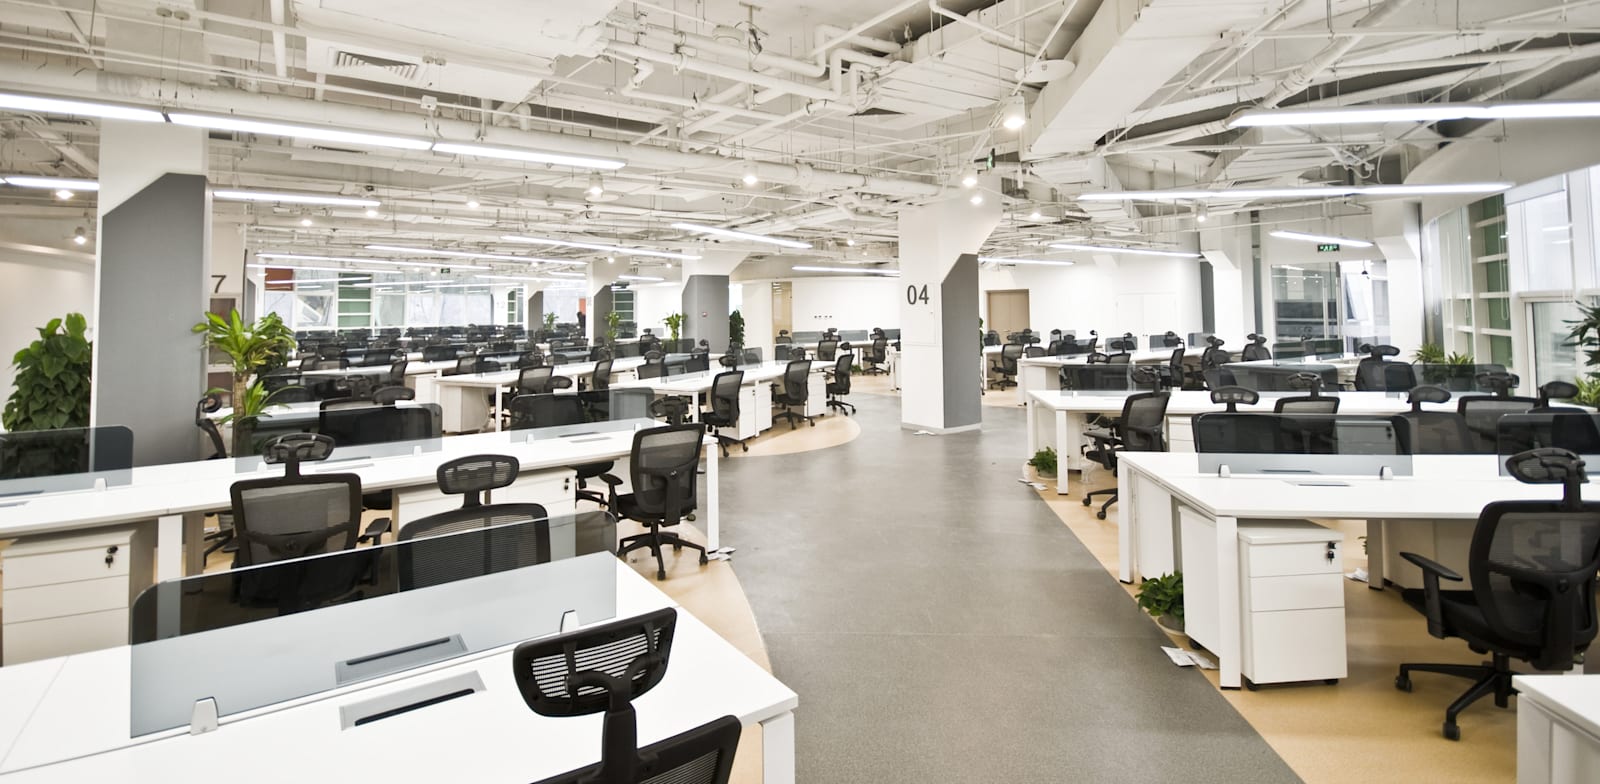 העובדים נדרשים לחזור לעבוד מהמשרדים, אולם ניכר שהם לא מעוניינים בכך / צילום: Shutterstock, luchunyu